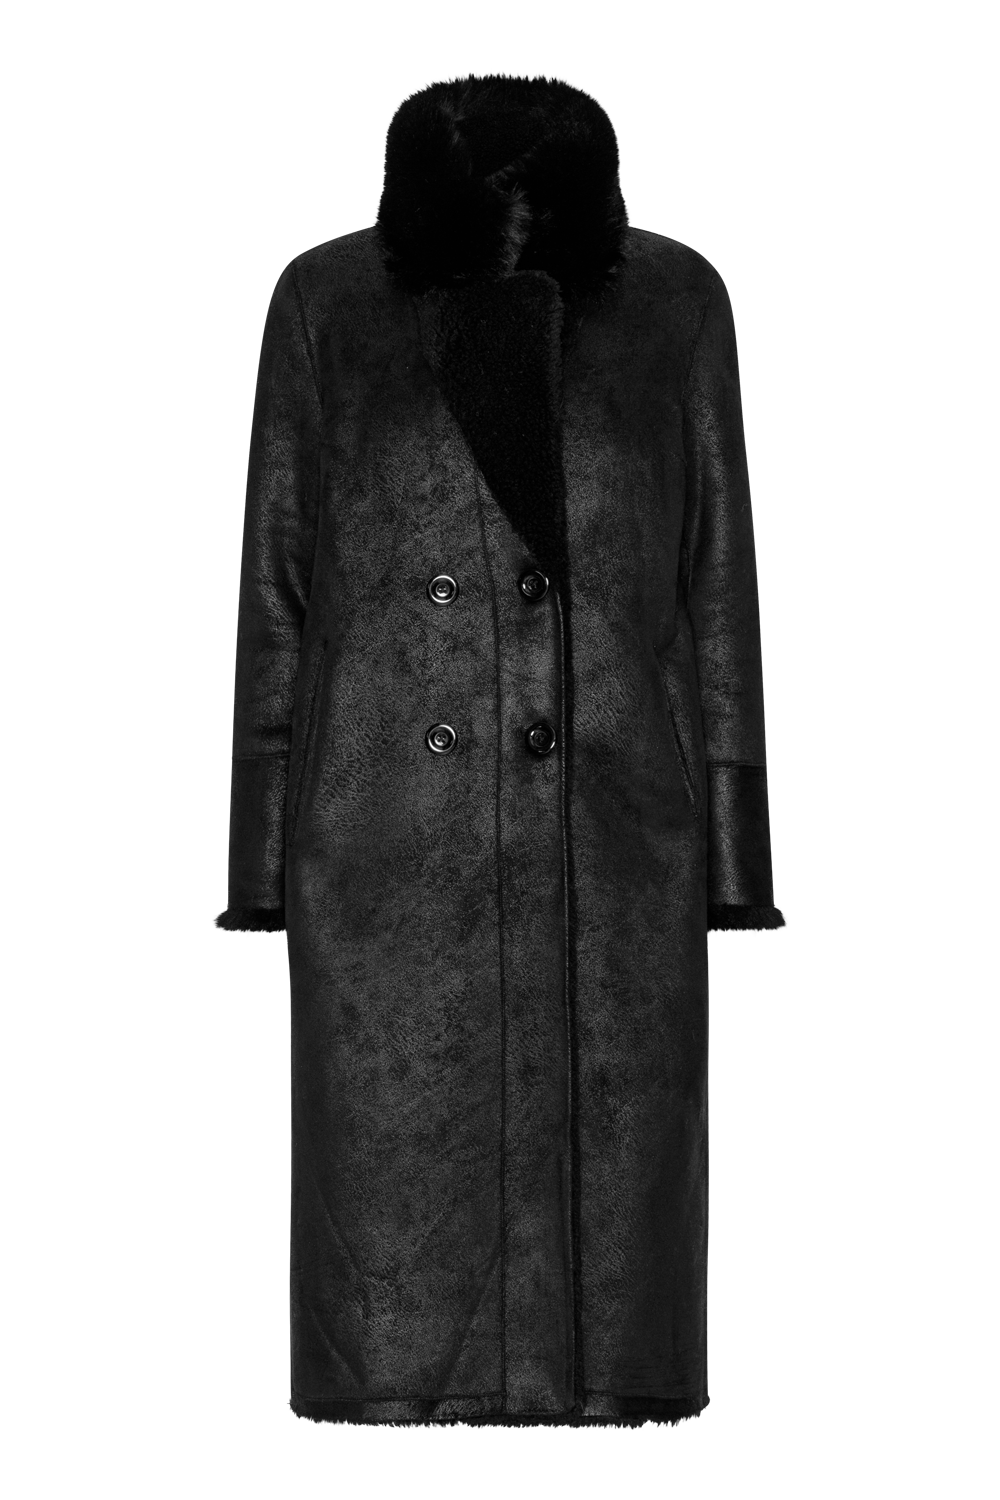 Leona Wool Coat Long Black